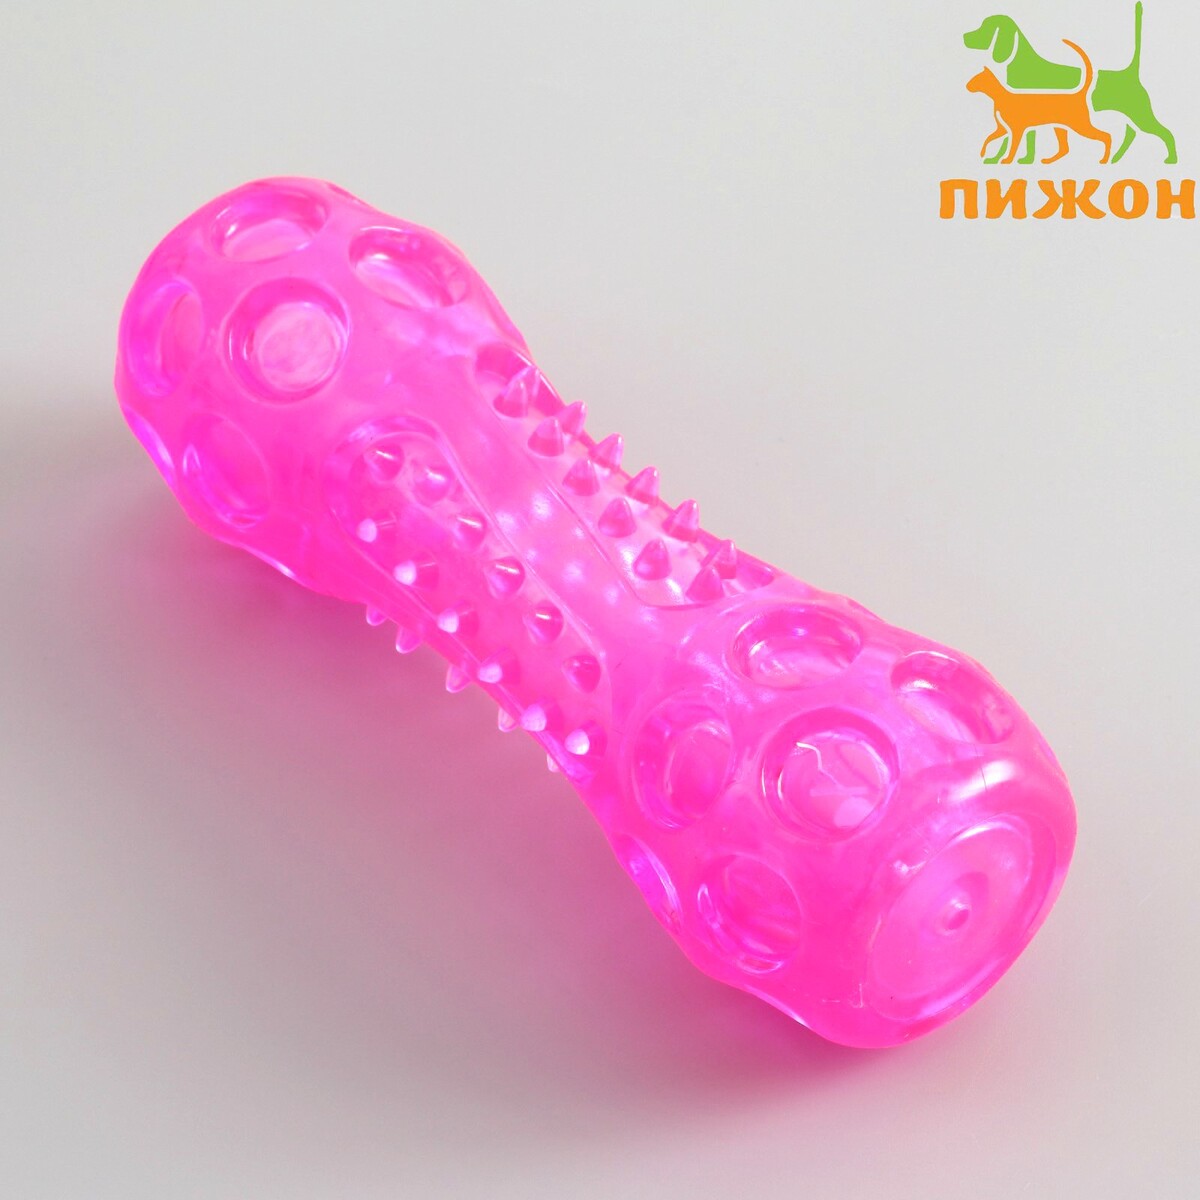 Игрушка-палка из термопластичной резины с утопленной пищалкой, розовая гимнастическая палка 2 кг the body bar bs bb02kg